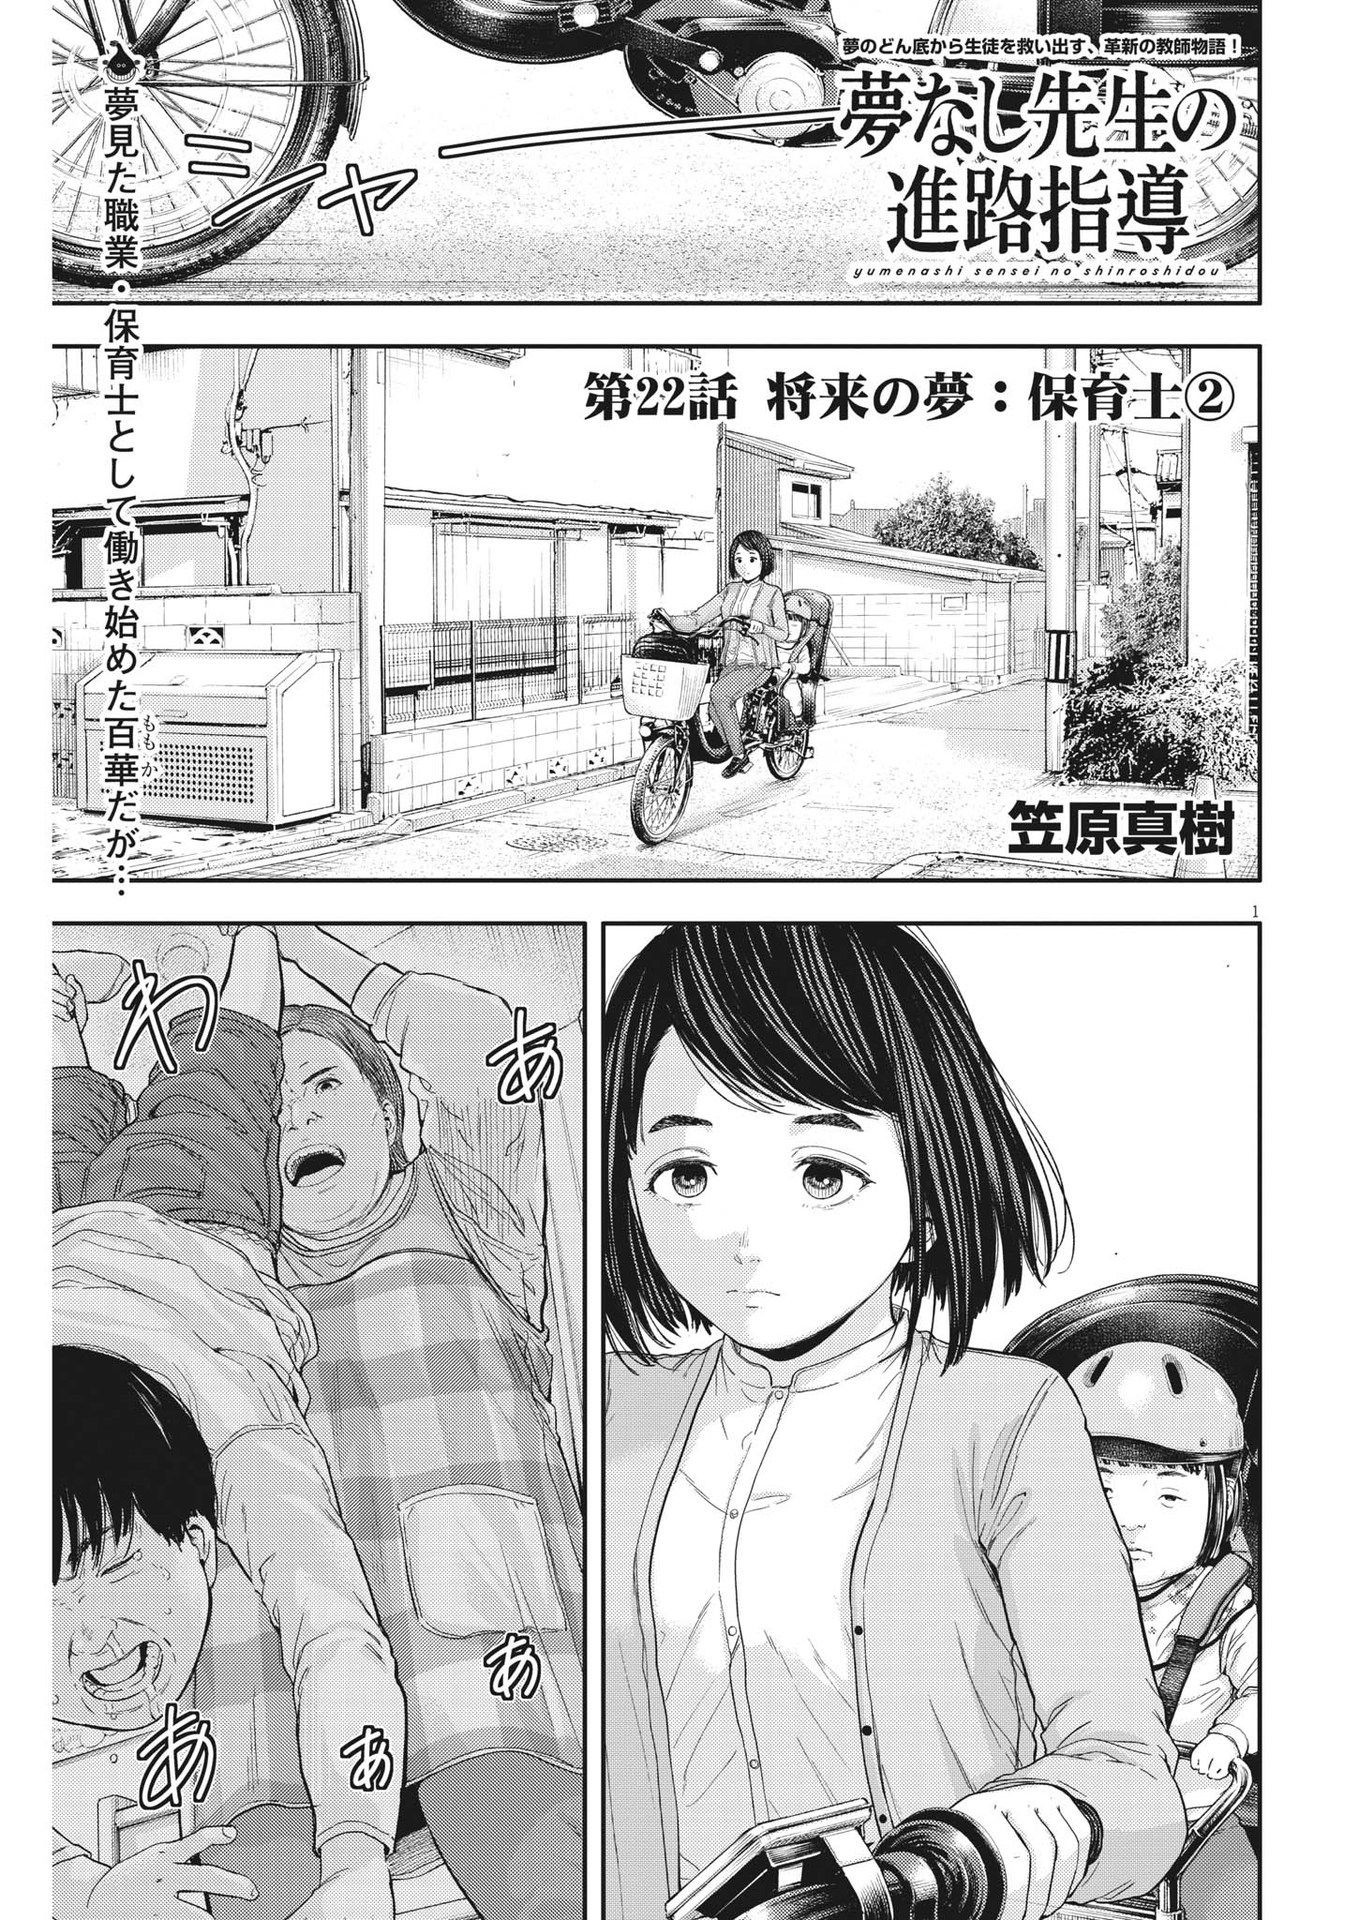 Yumenashi-sensei no Shinroshidou - Chapter 22 - Page 1